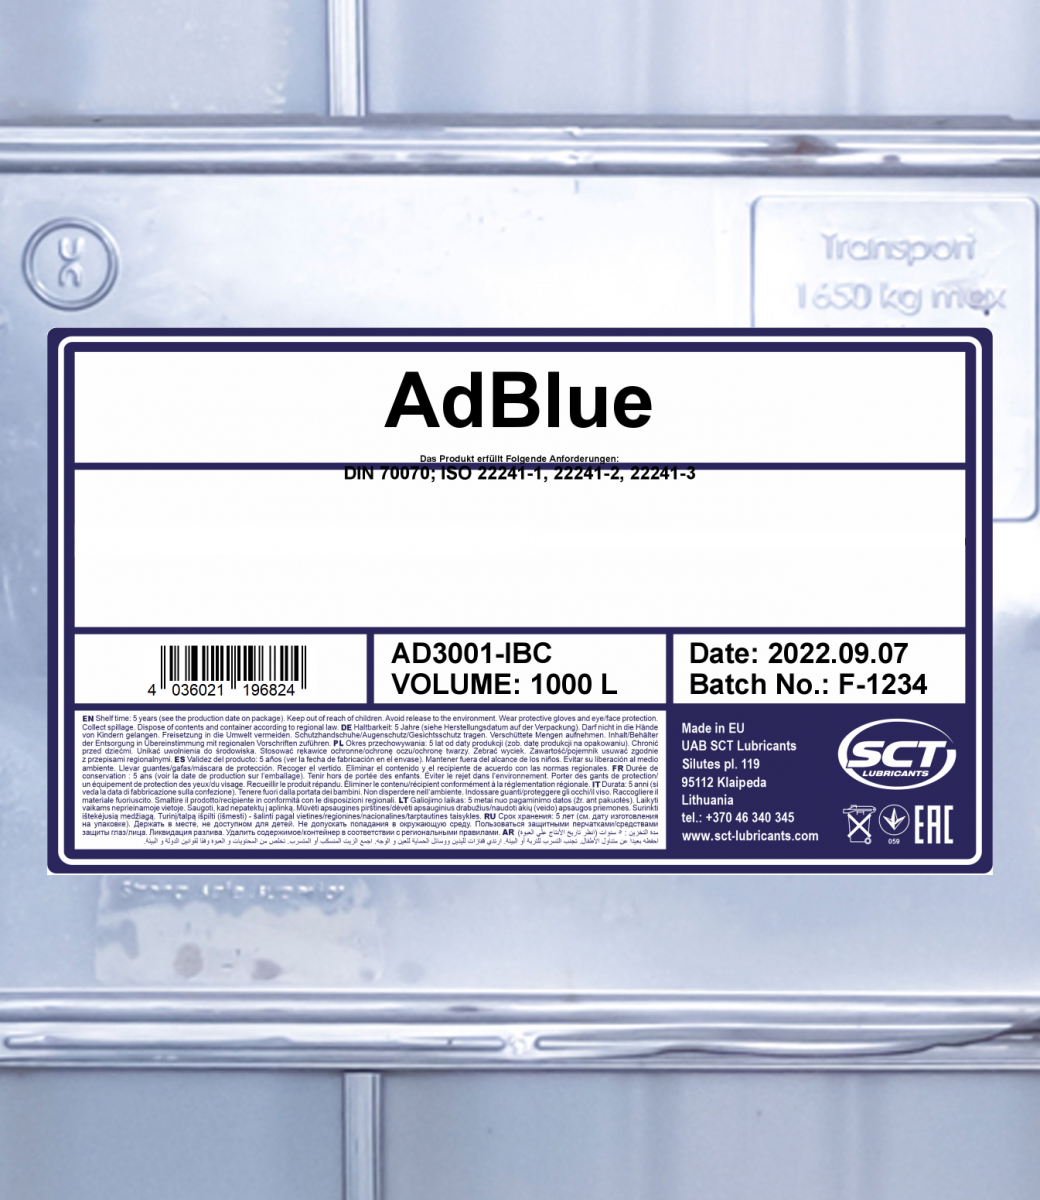 Air1 AdBlue 10 L bei ATO24 ❗